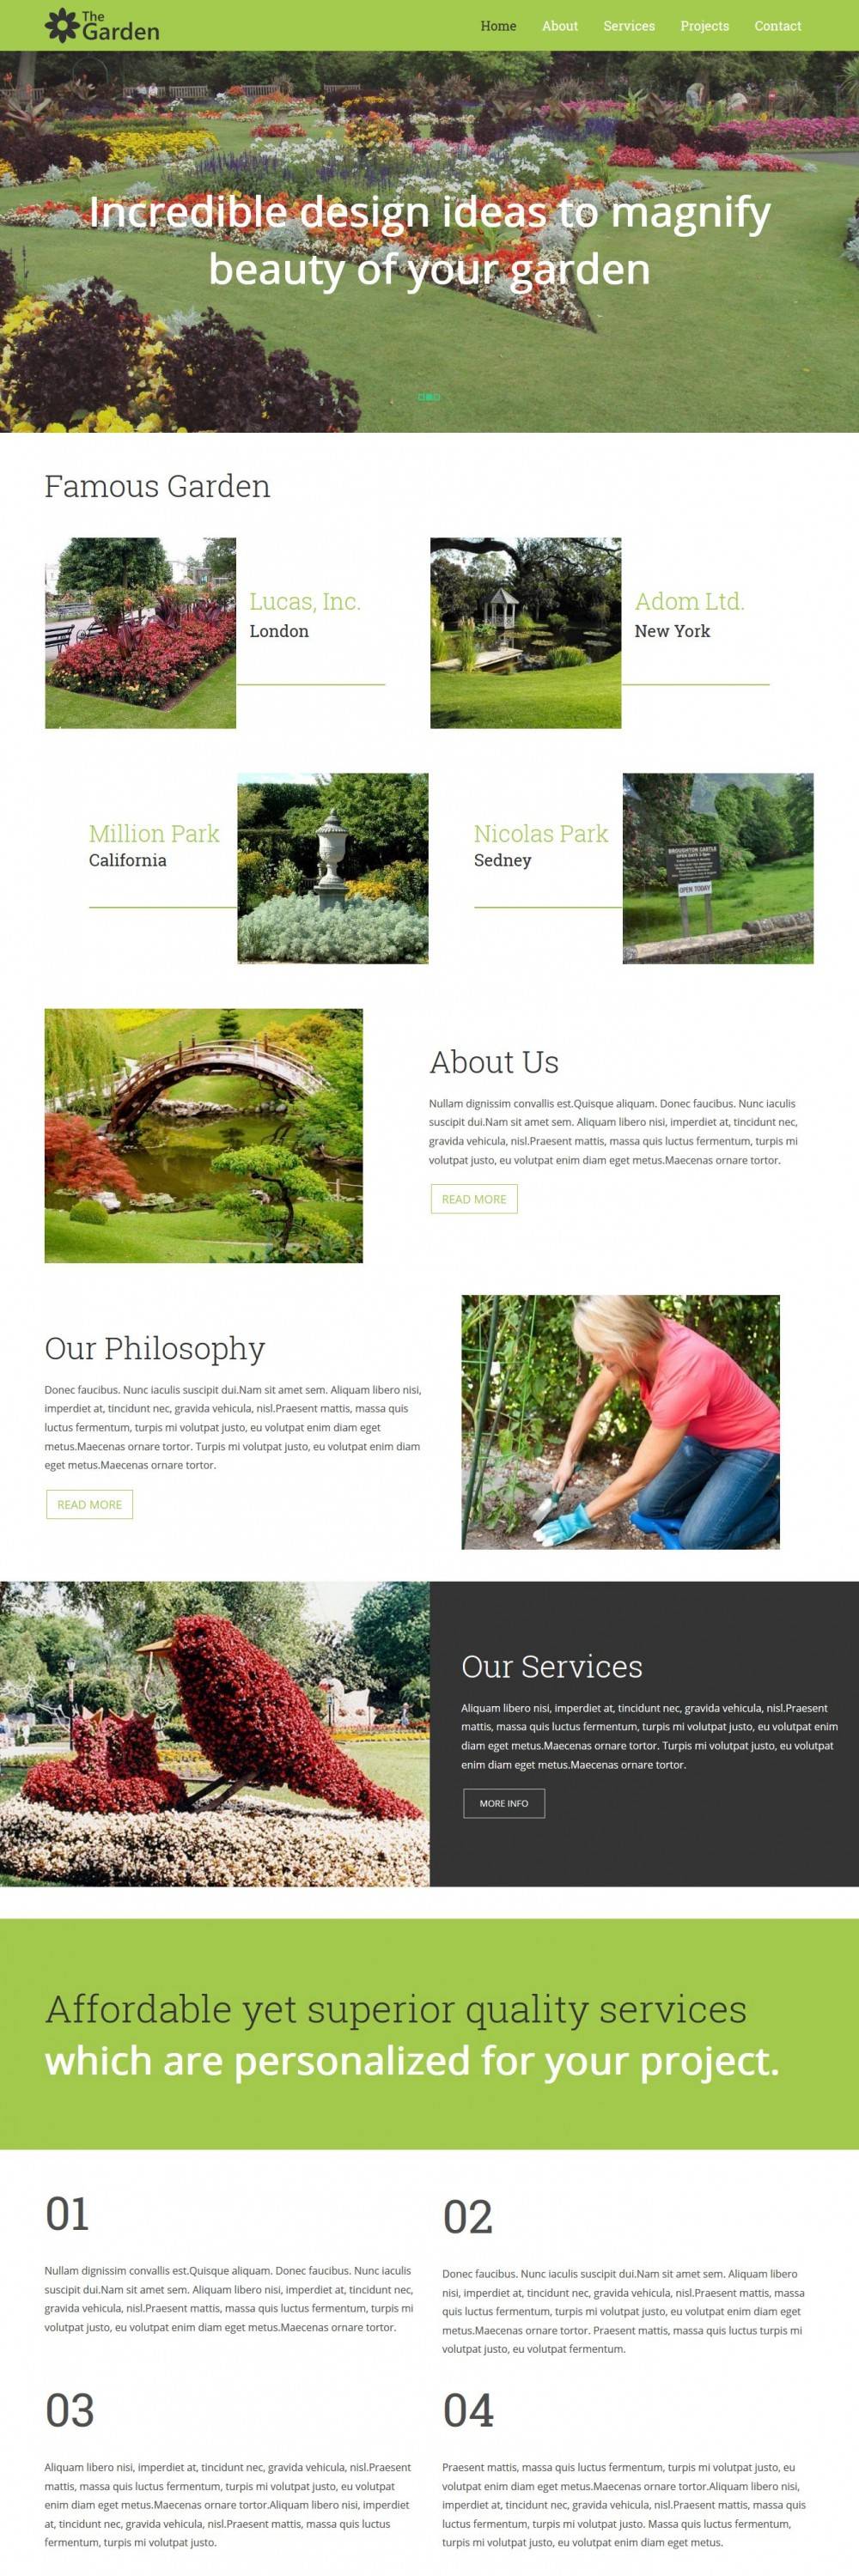 garden service business plan south africa